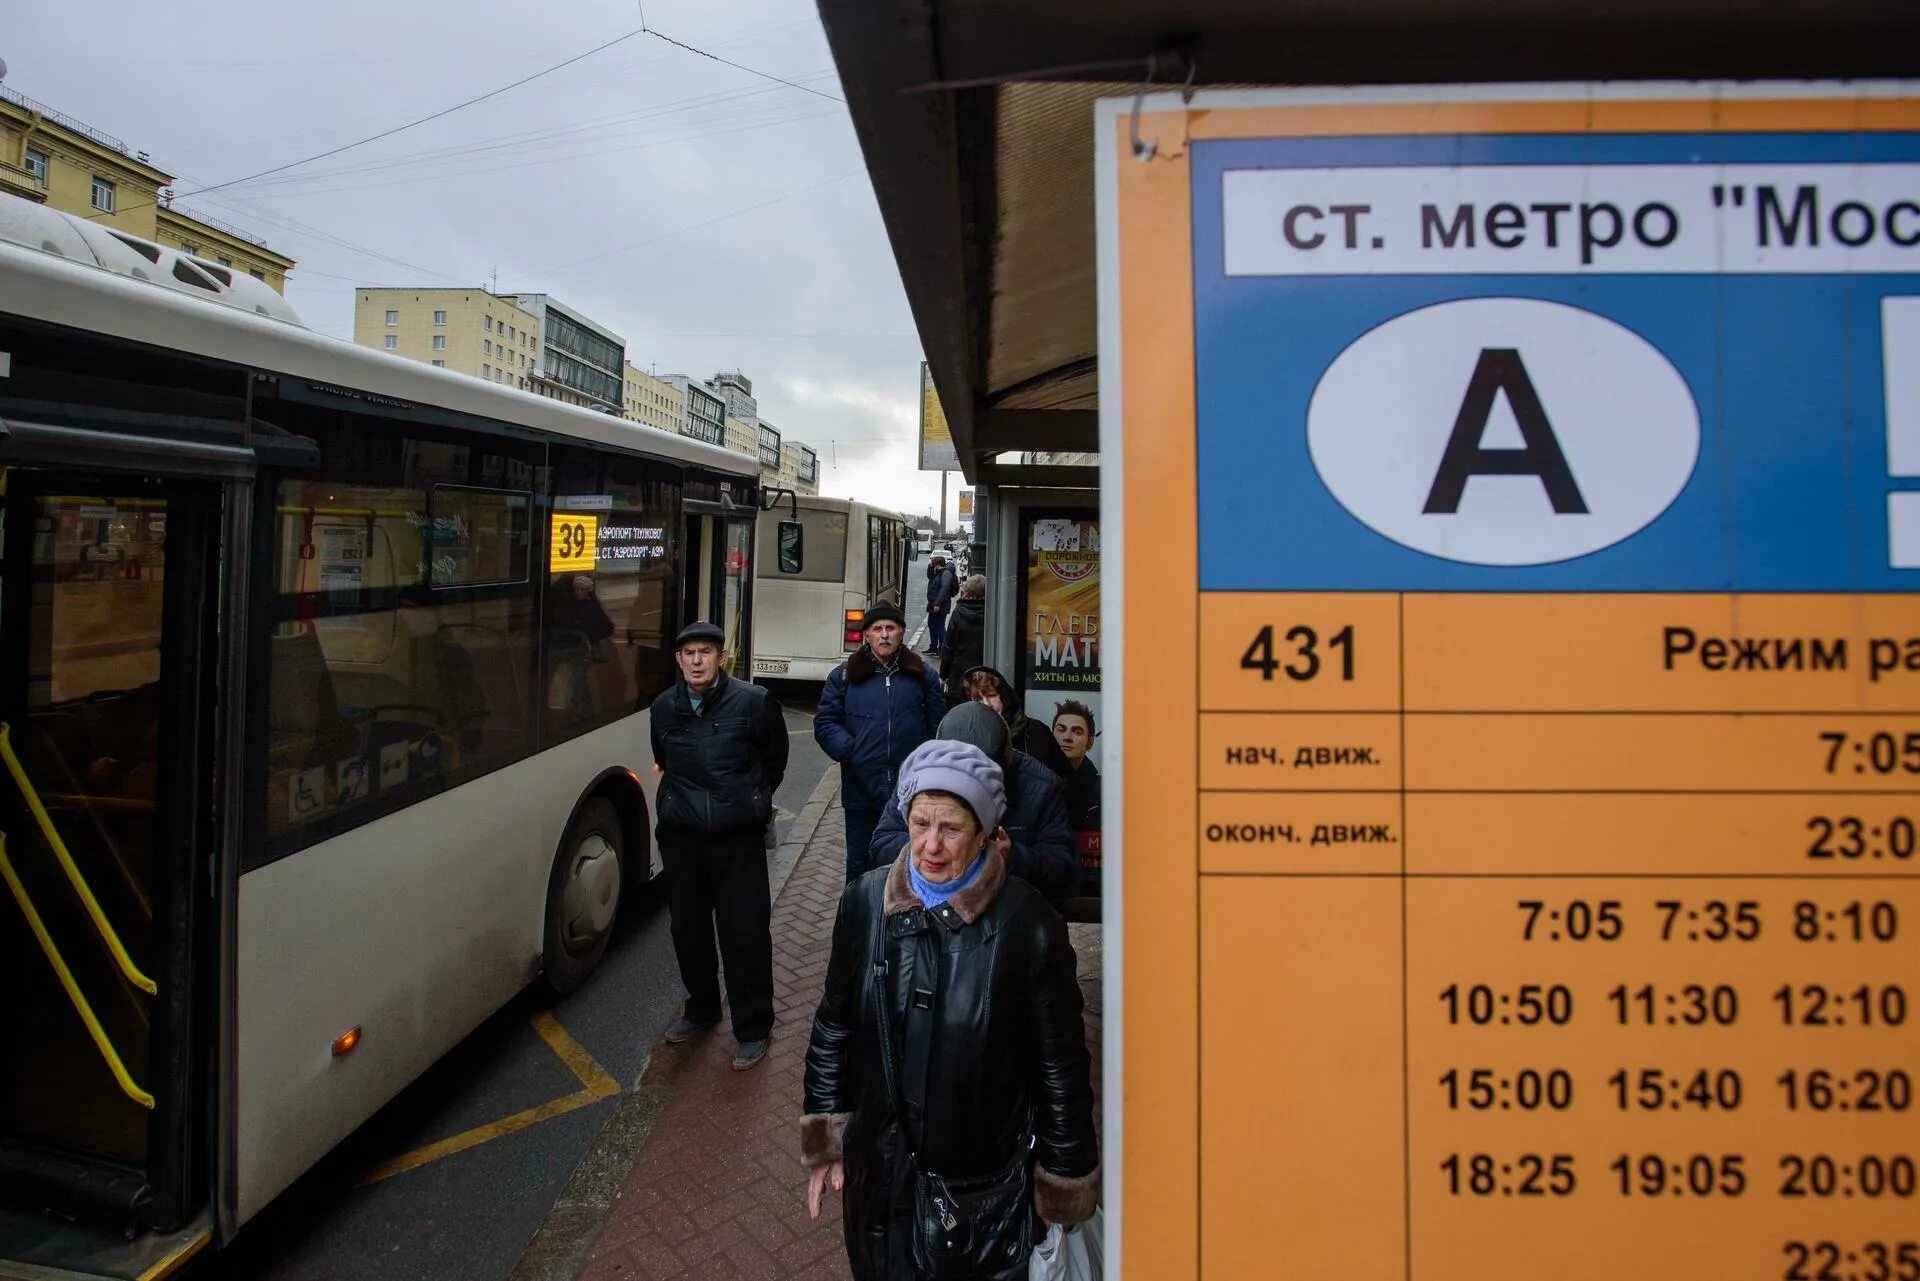 Метро автобус. Московский автобус. Автобус Пушкин. Метро автобус по тоннелю.